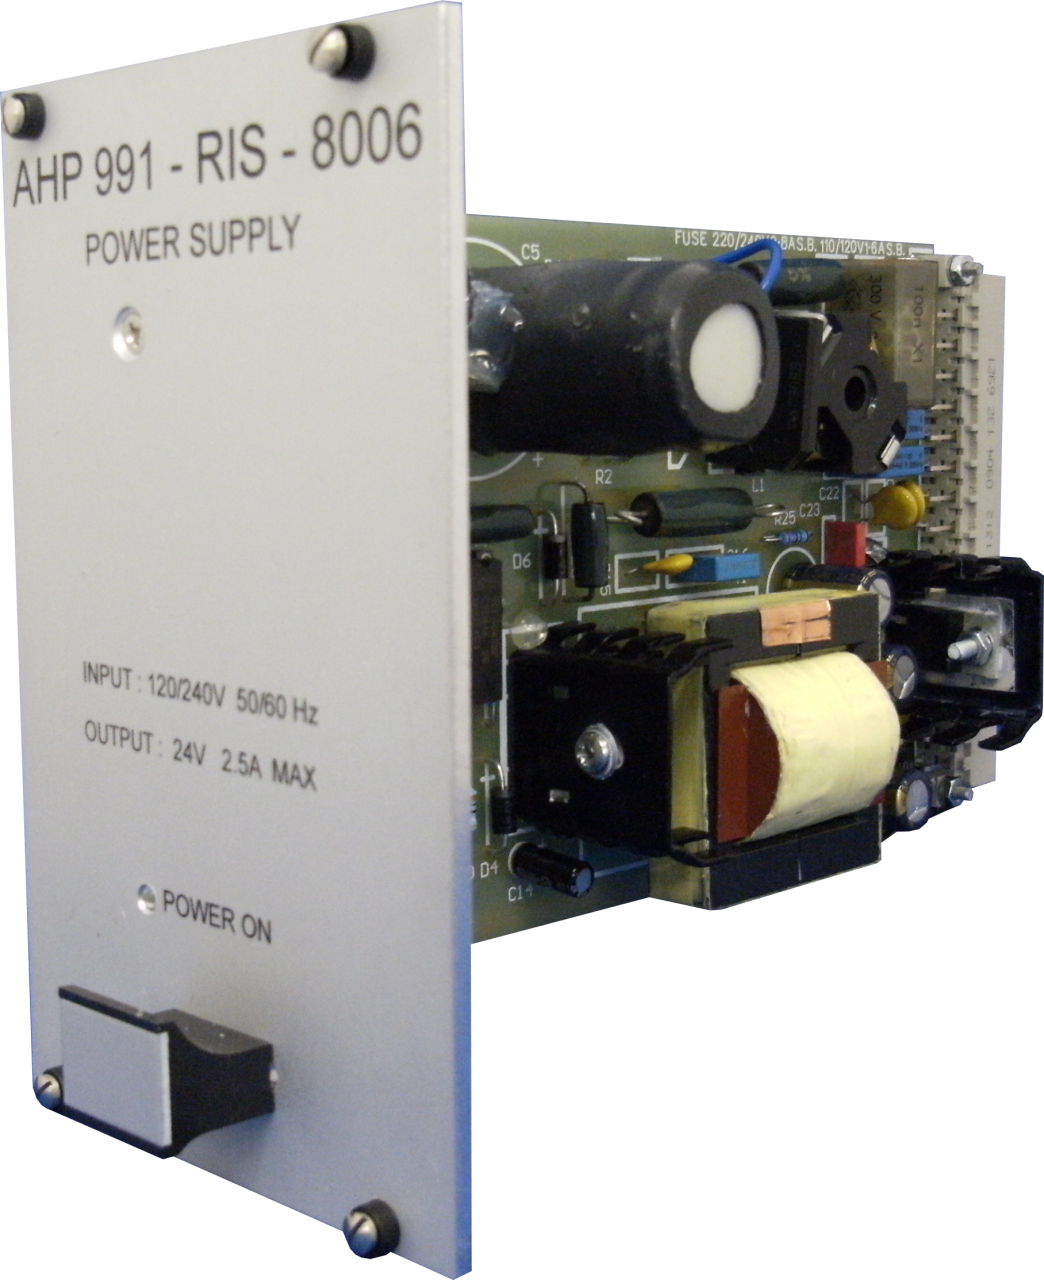 AHP991-RIS-8006